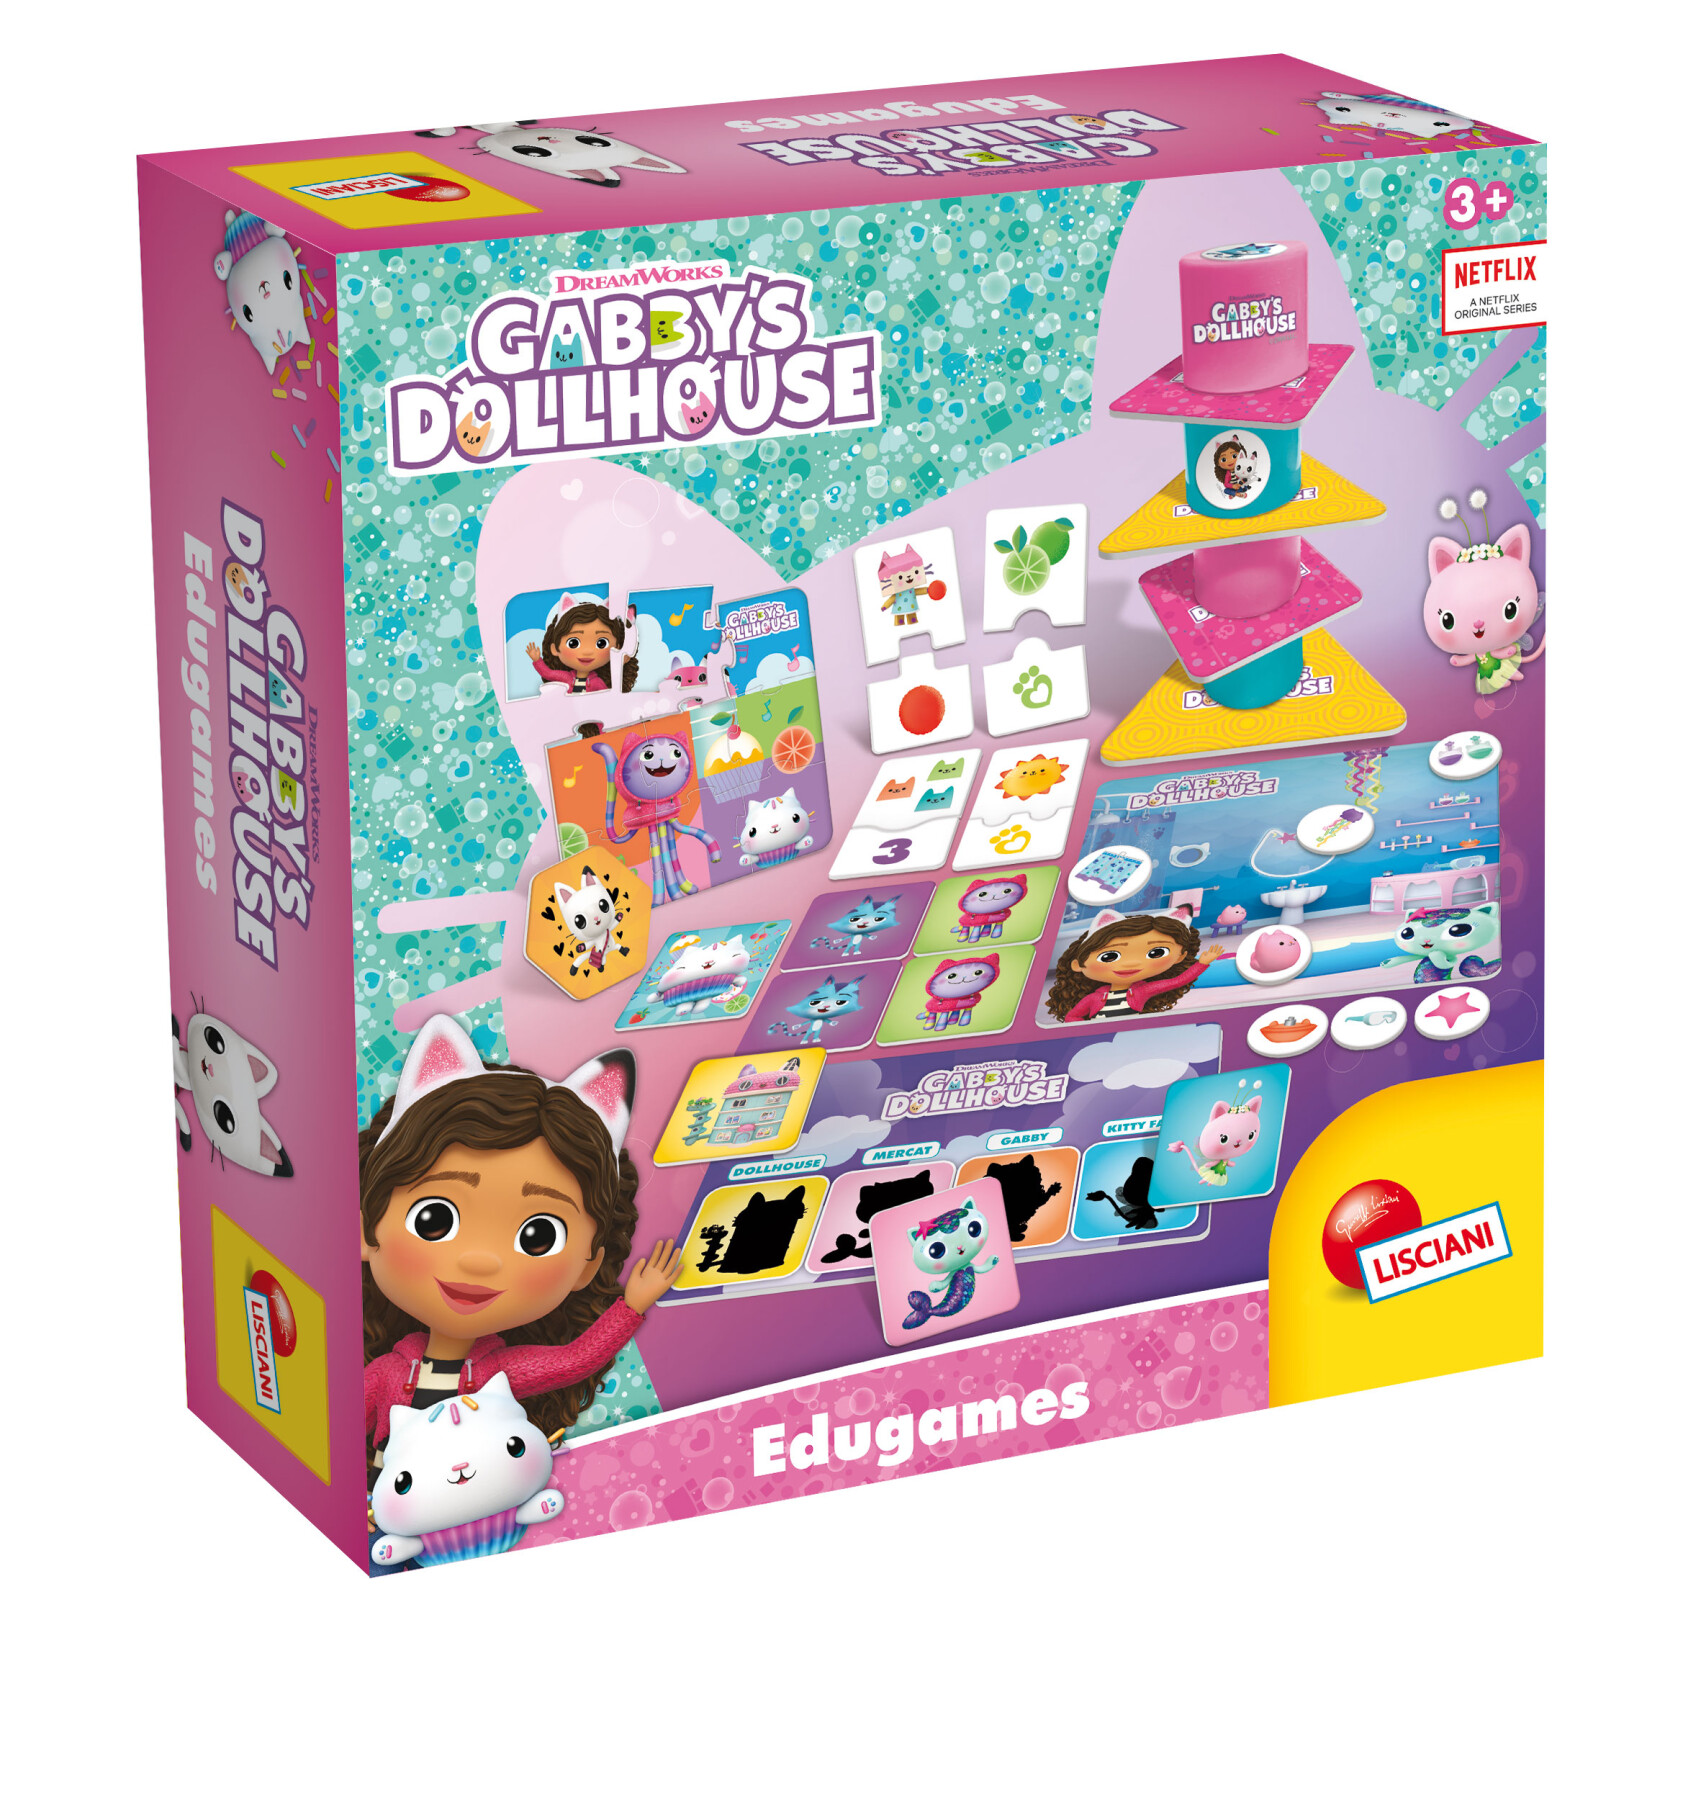 Gabby's dollhouse edugames - GABBY'S DOLLHOUSE, LISCIANI